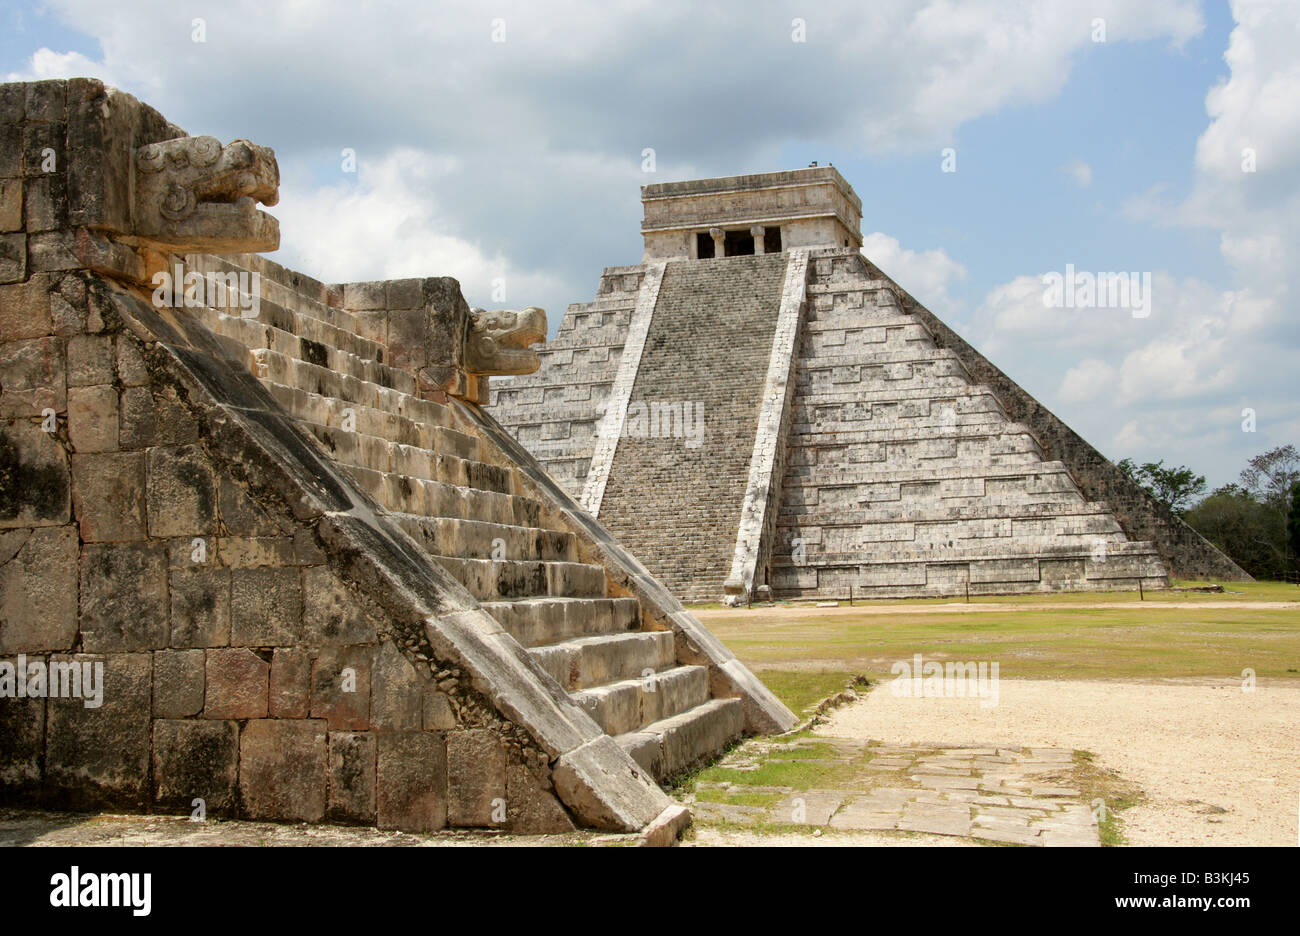 La plataforma de Venus y la Pirámide del Castillo (El Castillo) o el templo pirámide de Kukulcán, Chichen Itza, Yucatán, México Foto de stock